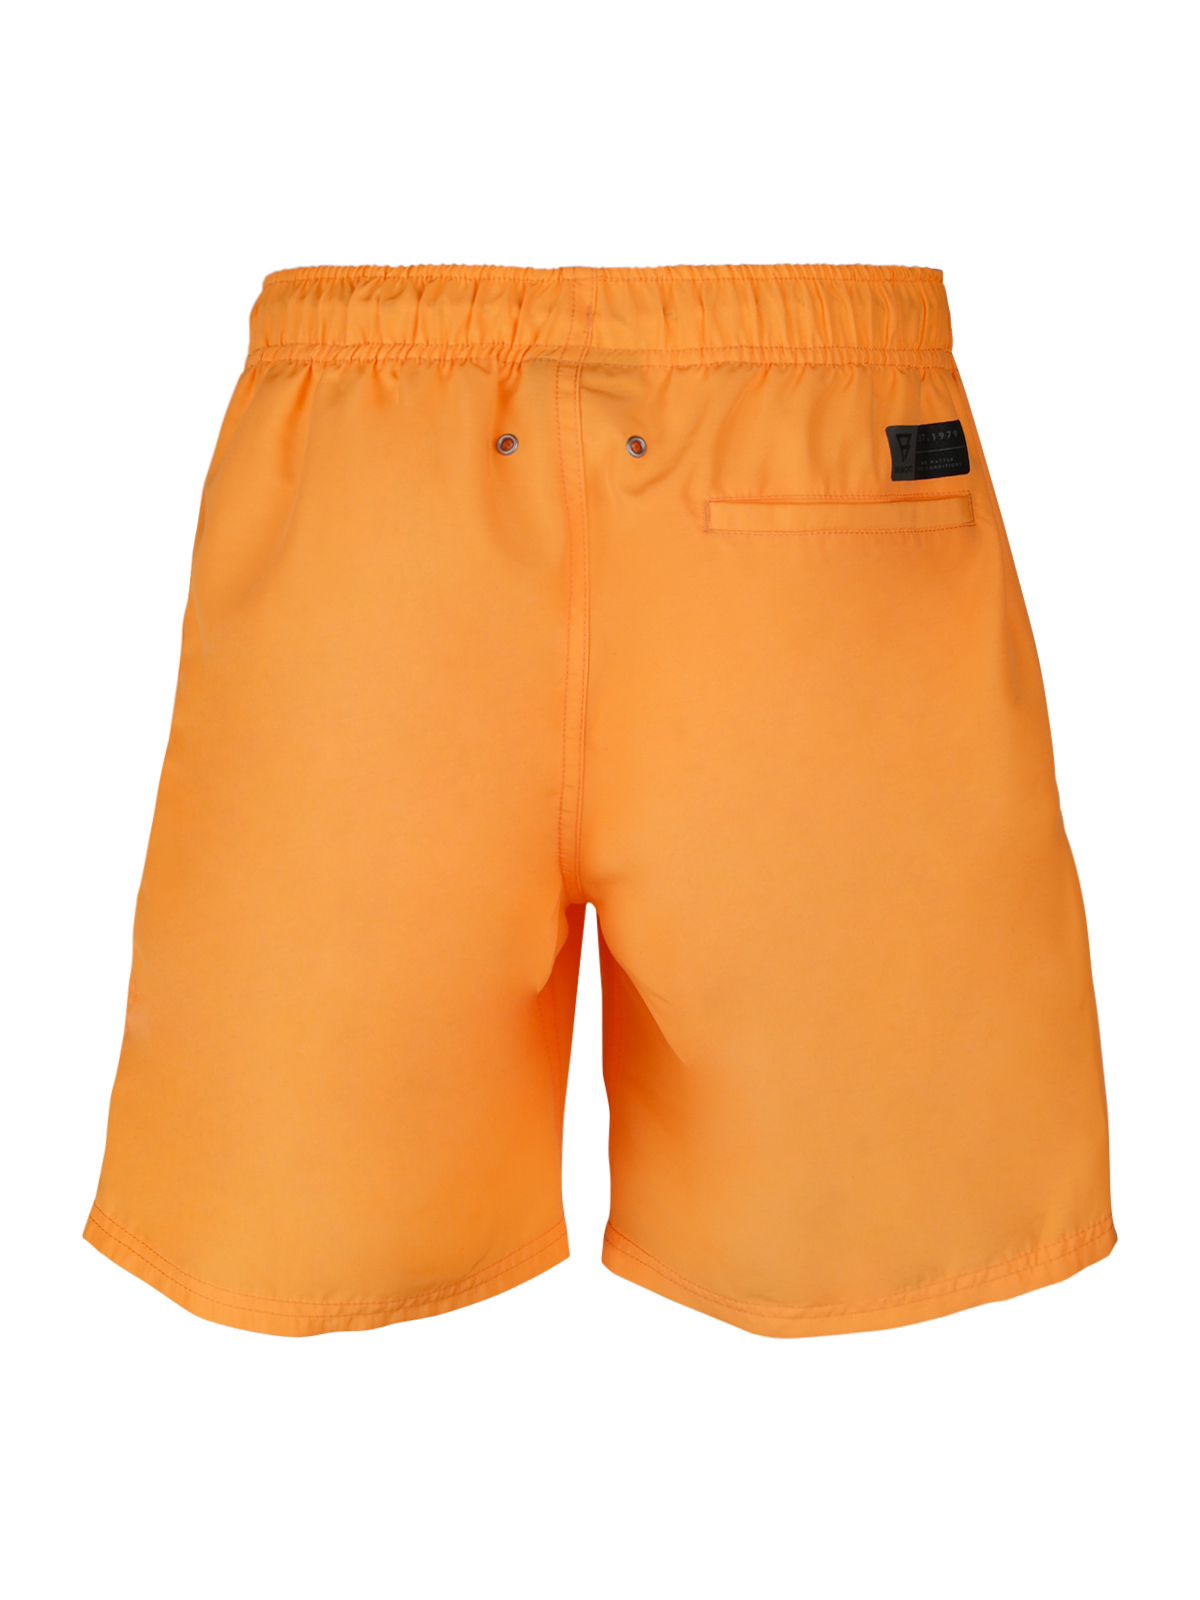 Hestey Boys Swim Shorts | Orange